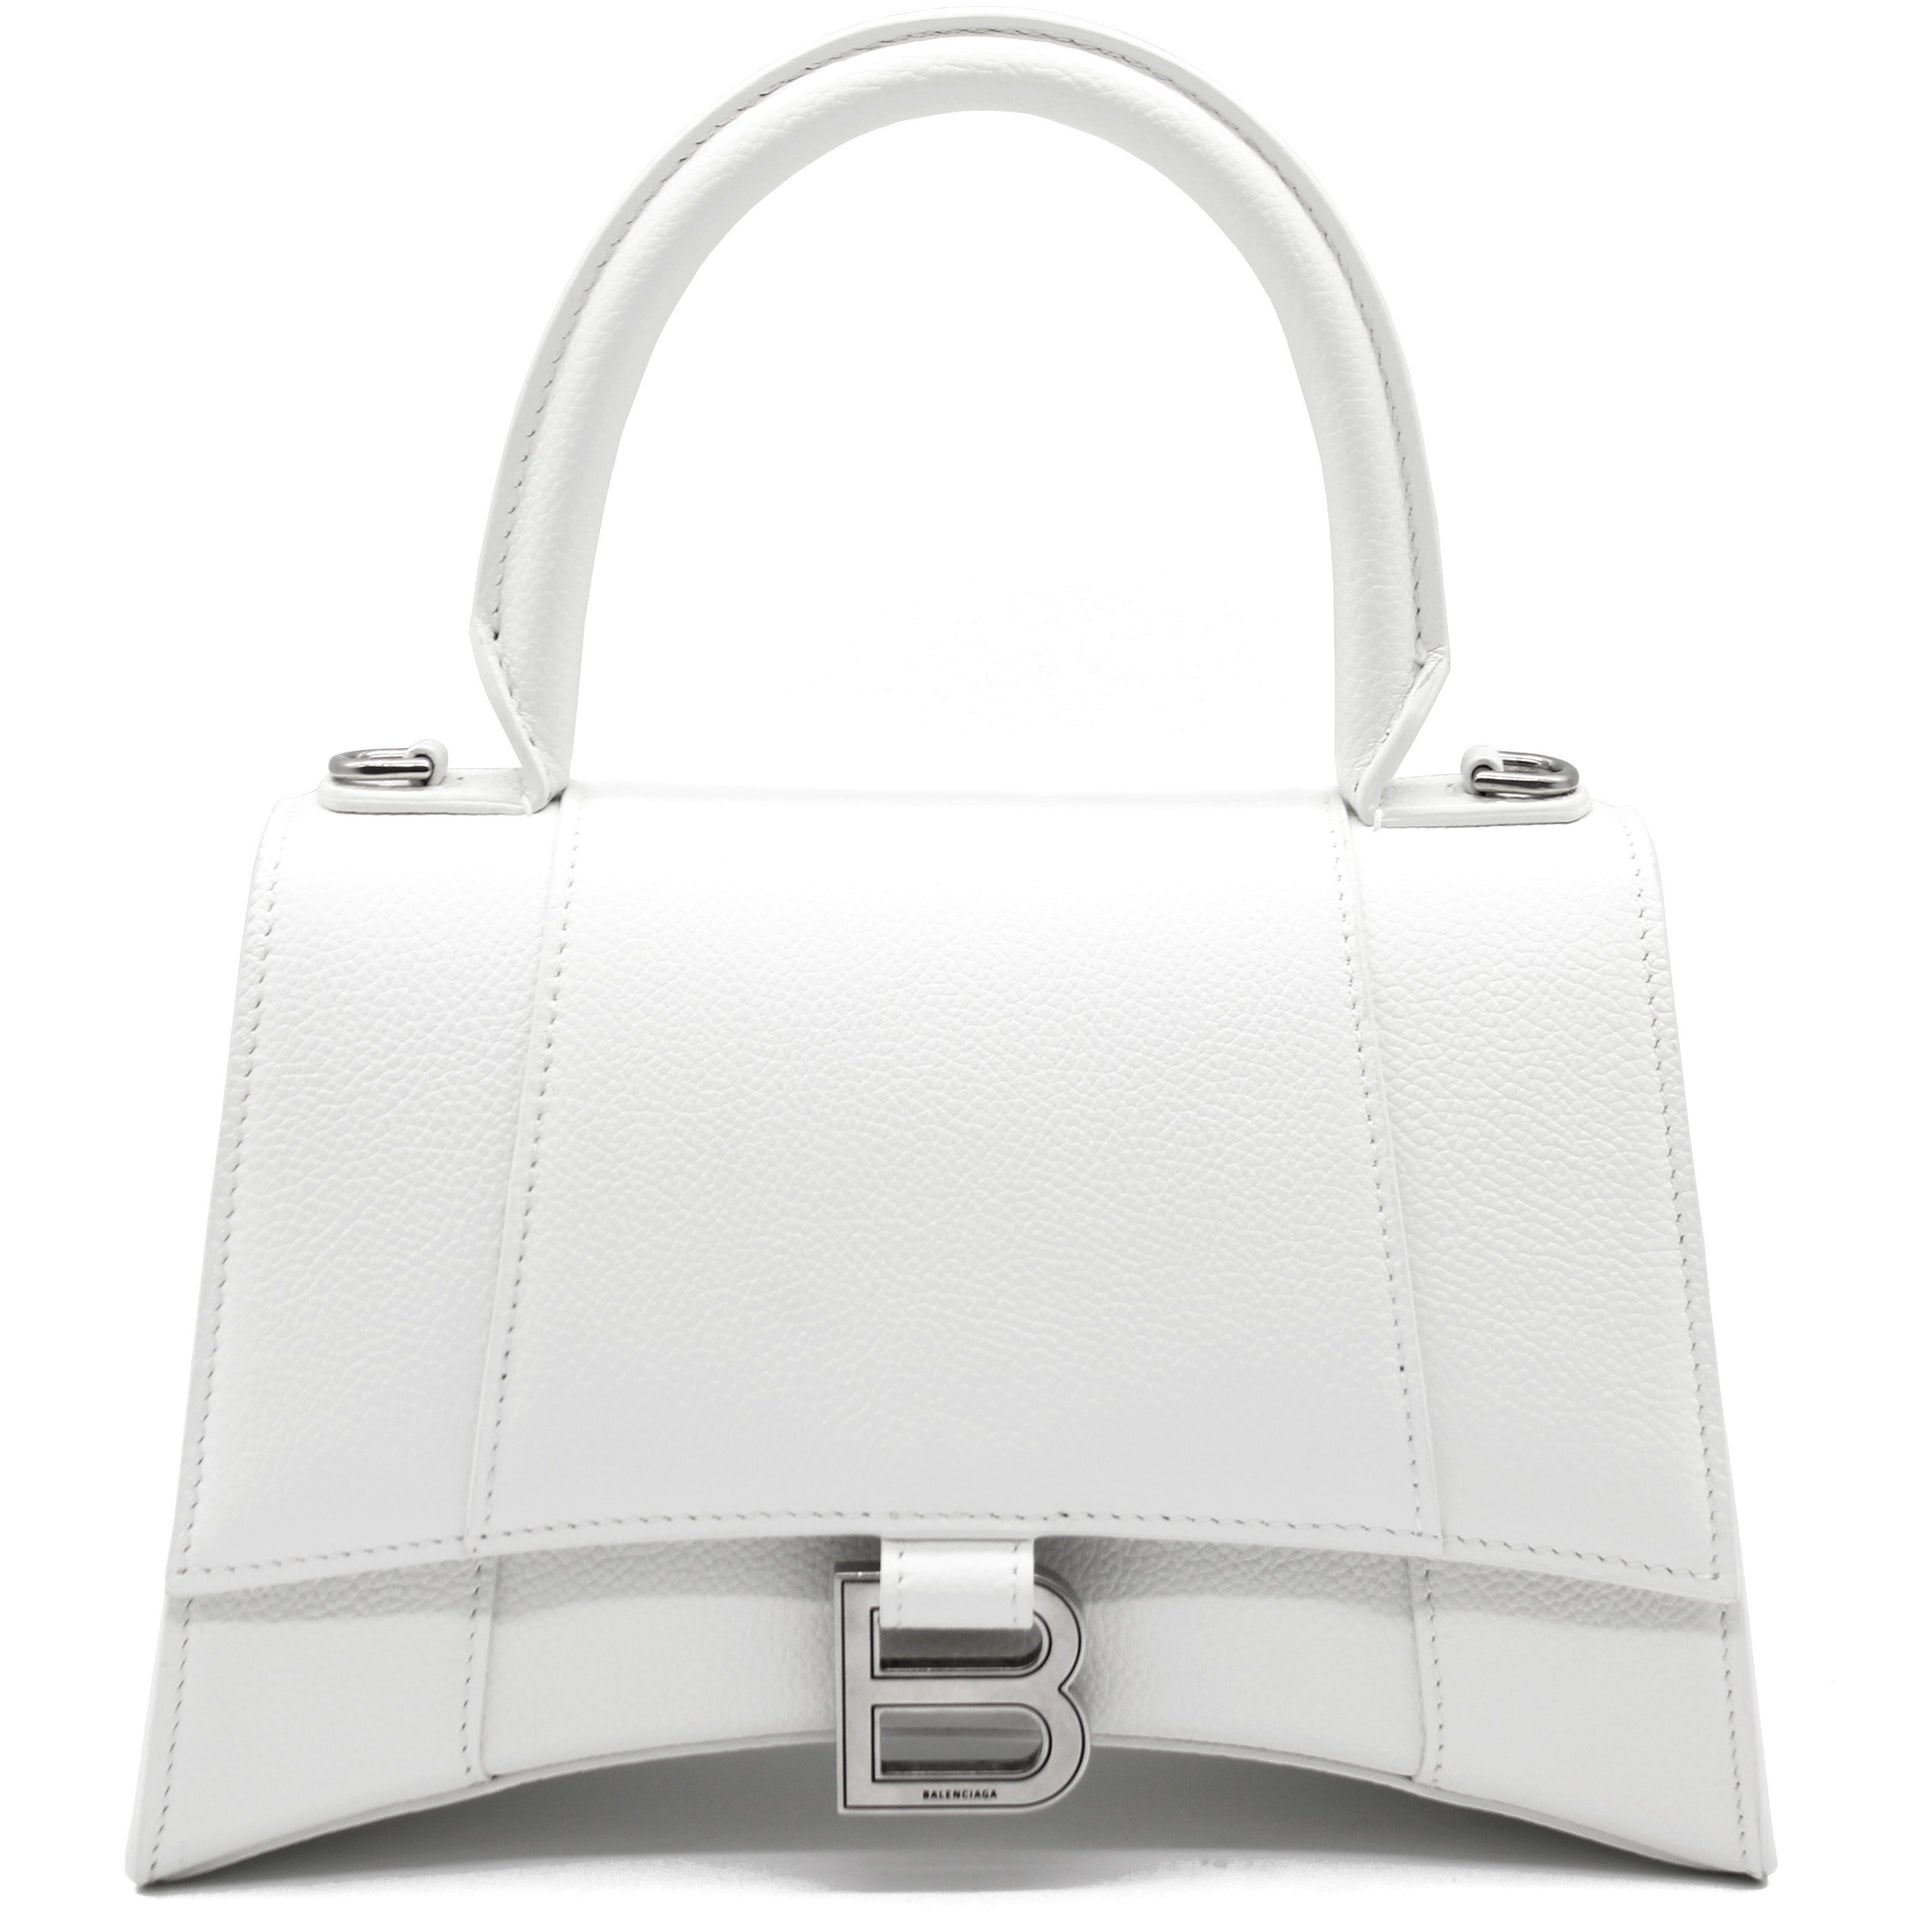 Balenciaga Crossbody Bag Women 537387DLQ4N9060 Leather White Off White 570